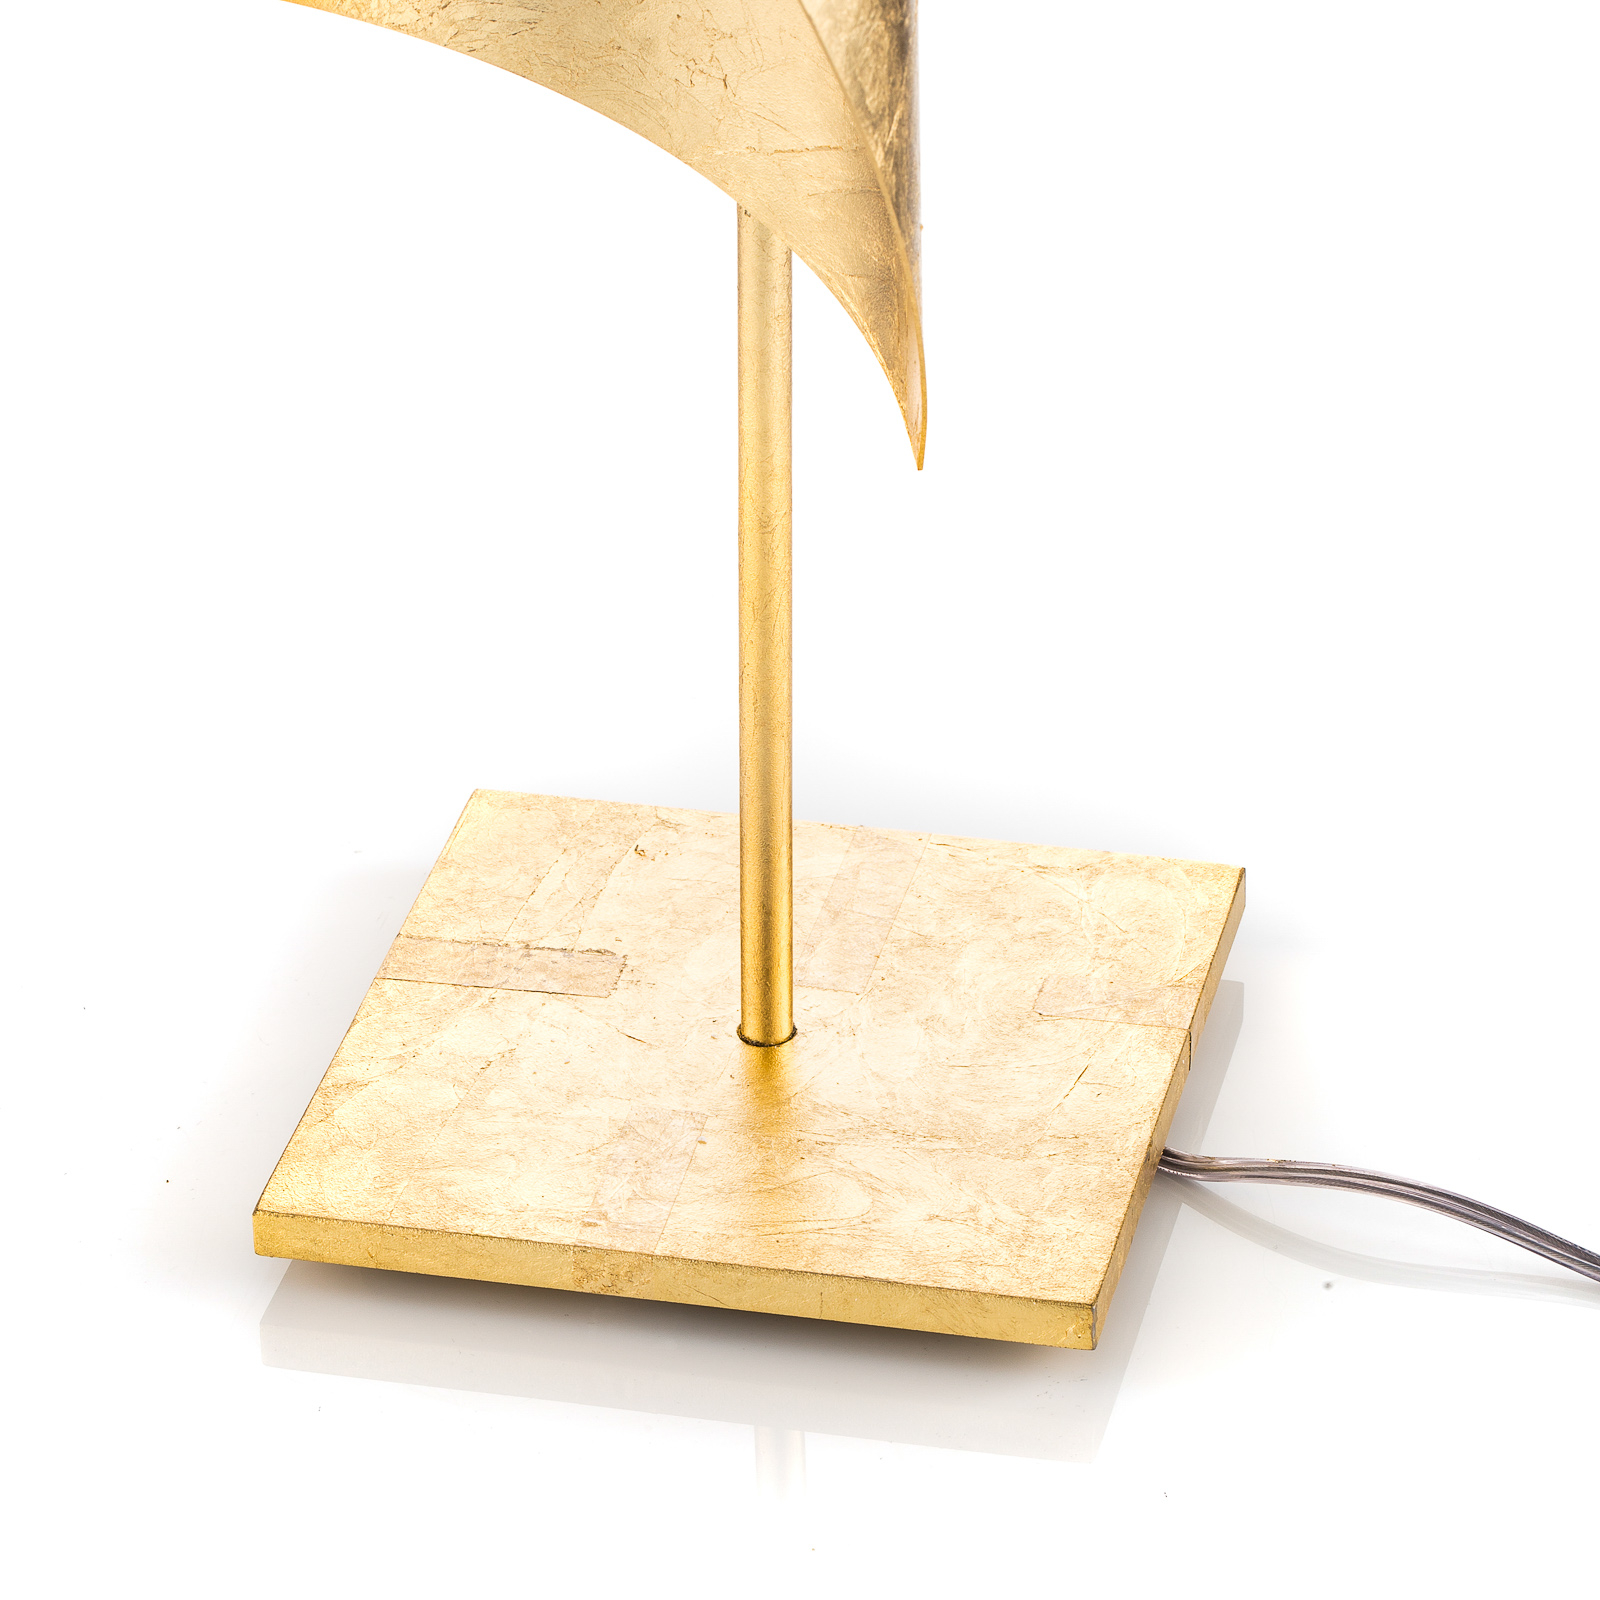 Knikerboker tafellamp Hué bladgoud, 70 cm hoog